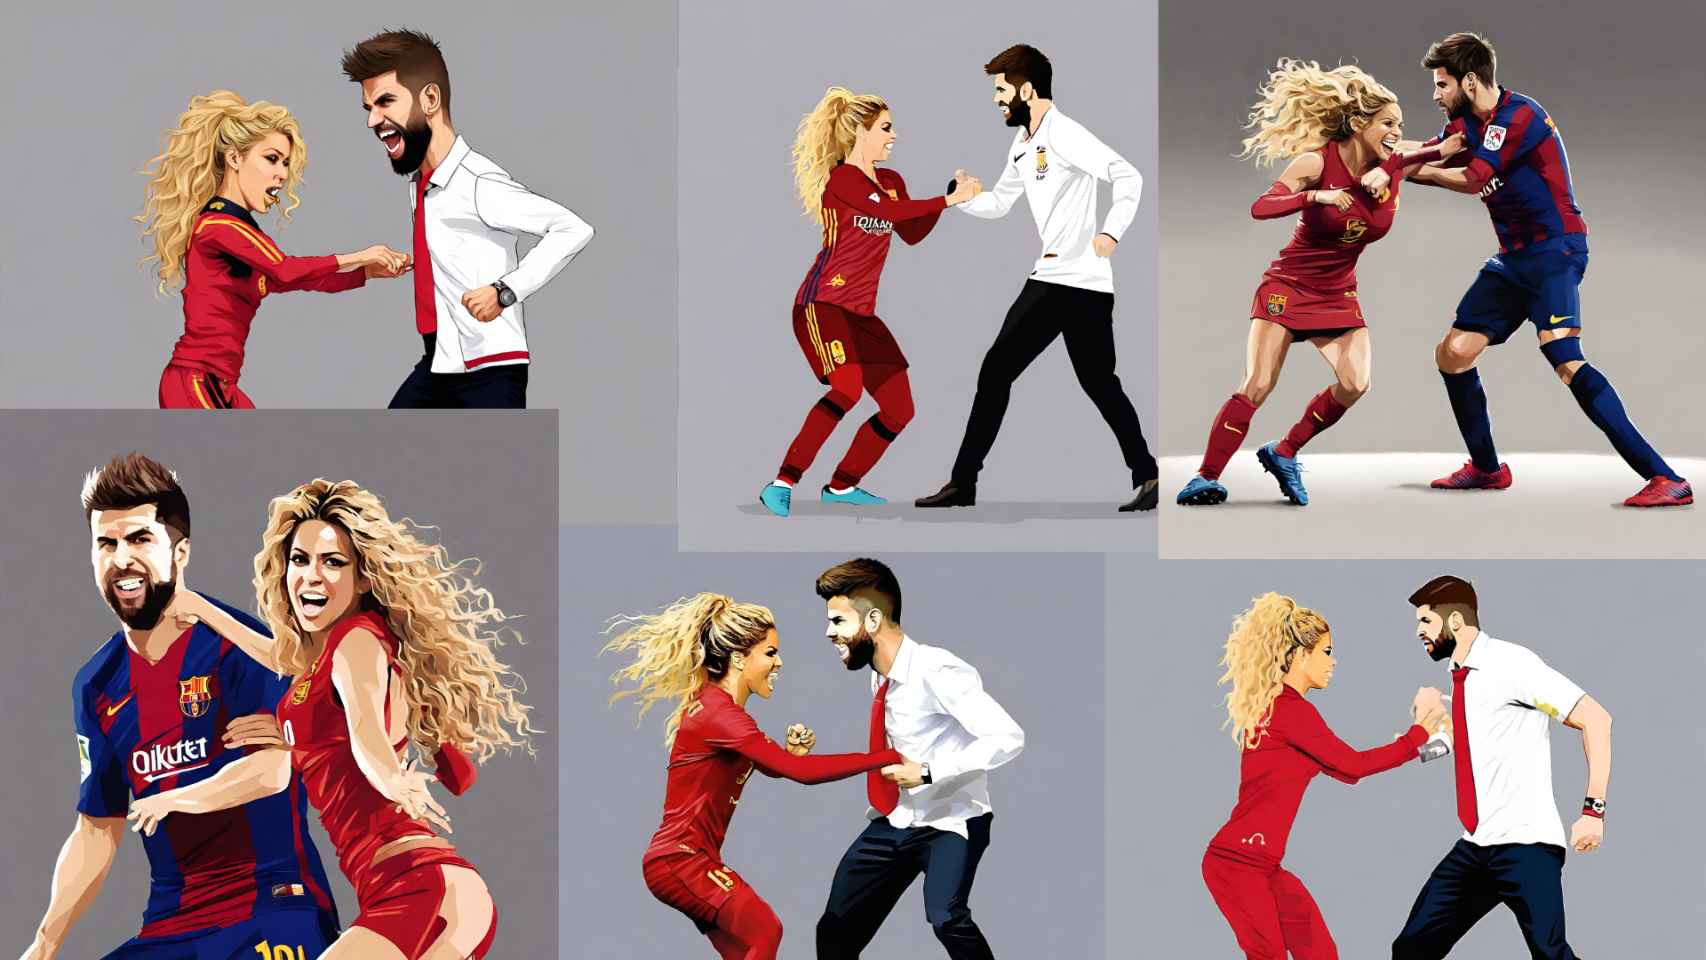 Montajes realizados con IA de Shakira y Piqué peleando (2)